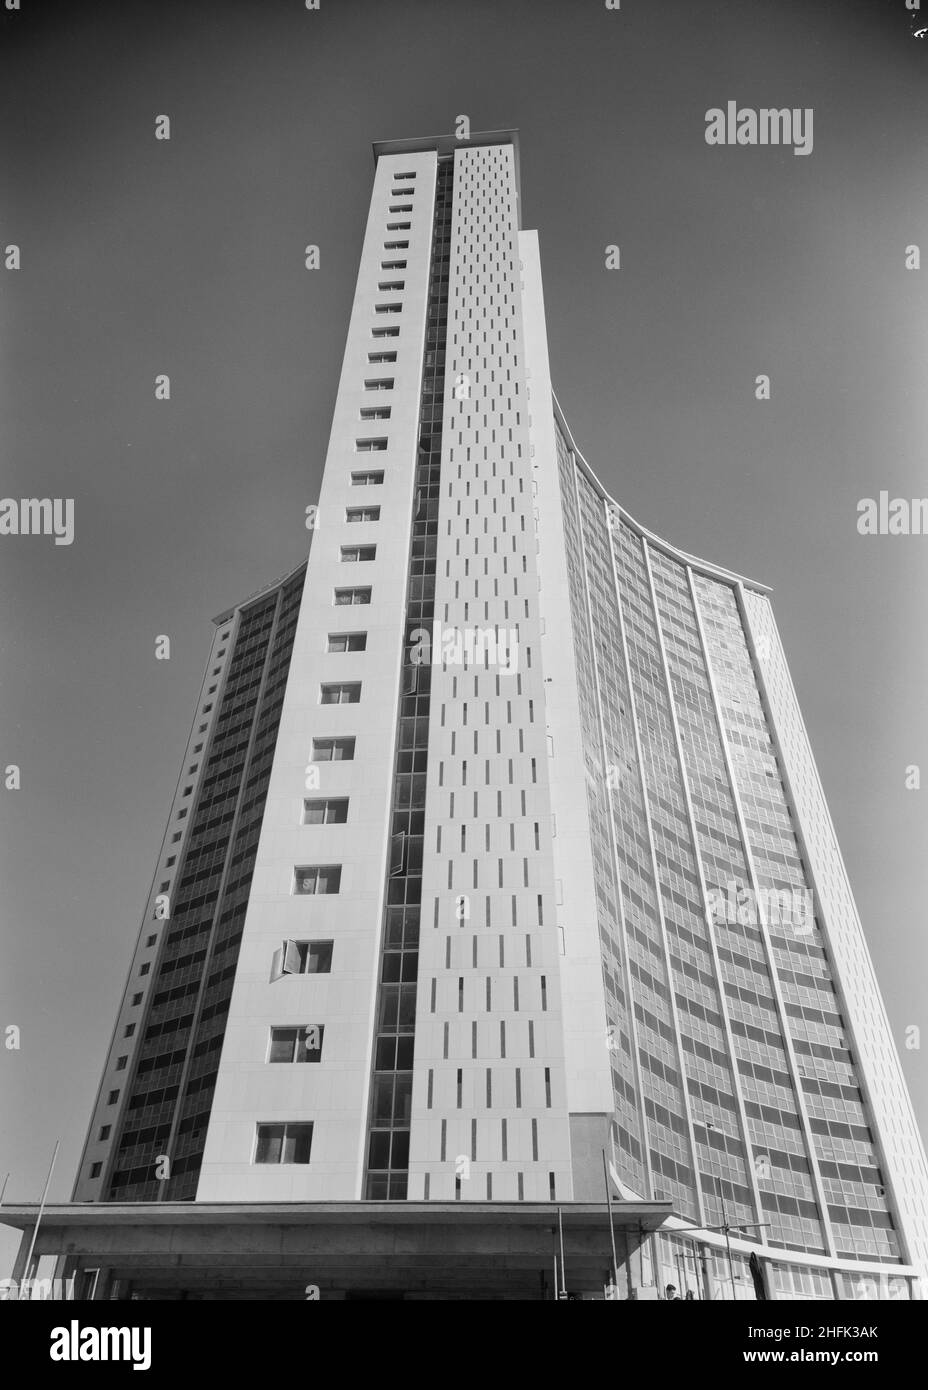 Empress State Building, Lillie Road, Earl's Court, Hammersmith und Fulham, London, 05/06/1962. Das neu fertiggestellte Empress State Building, Earl's Court, London. Ein Blick auf den Turm von einem Eingang am Fuß. Laing baute die Fundamente und den Stahlbetonrahmen des Gebäudes, die Arbeiten begannen im November 1959 und liefen bis Juli 1961. Stockfoto